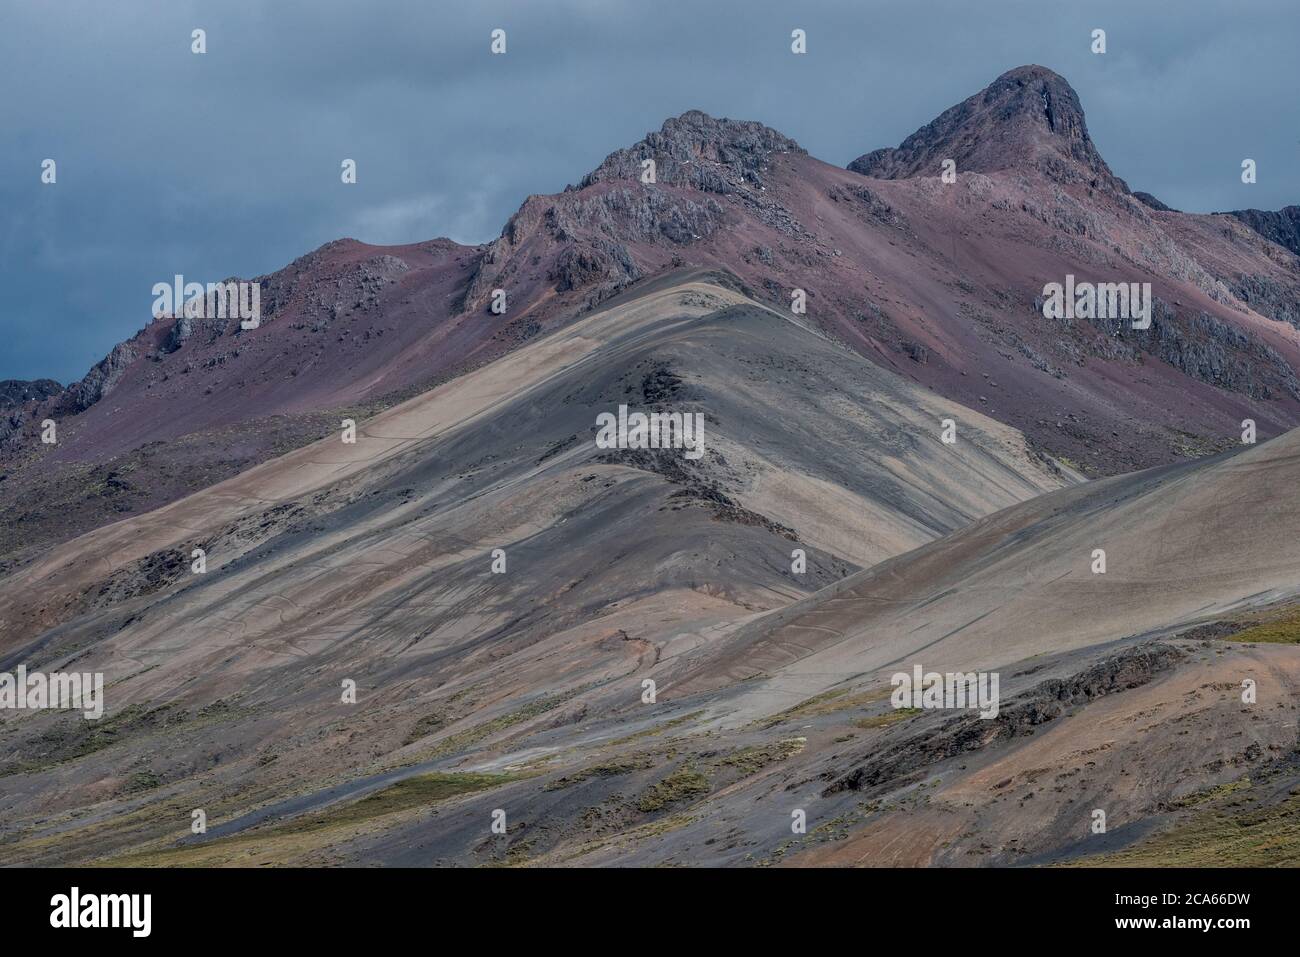 La géologie et les couleurs intéressantes des rochers et du sable font une belle vue sur la montagne dans les Andes péruviennes dans la Cordillère Vilcanota. Banque D'Images